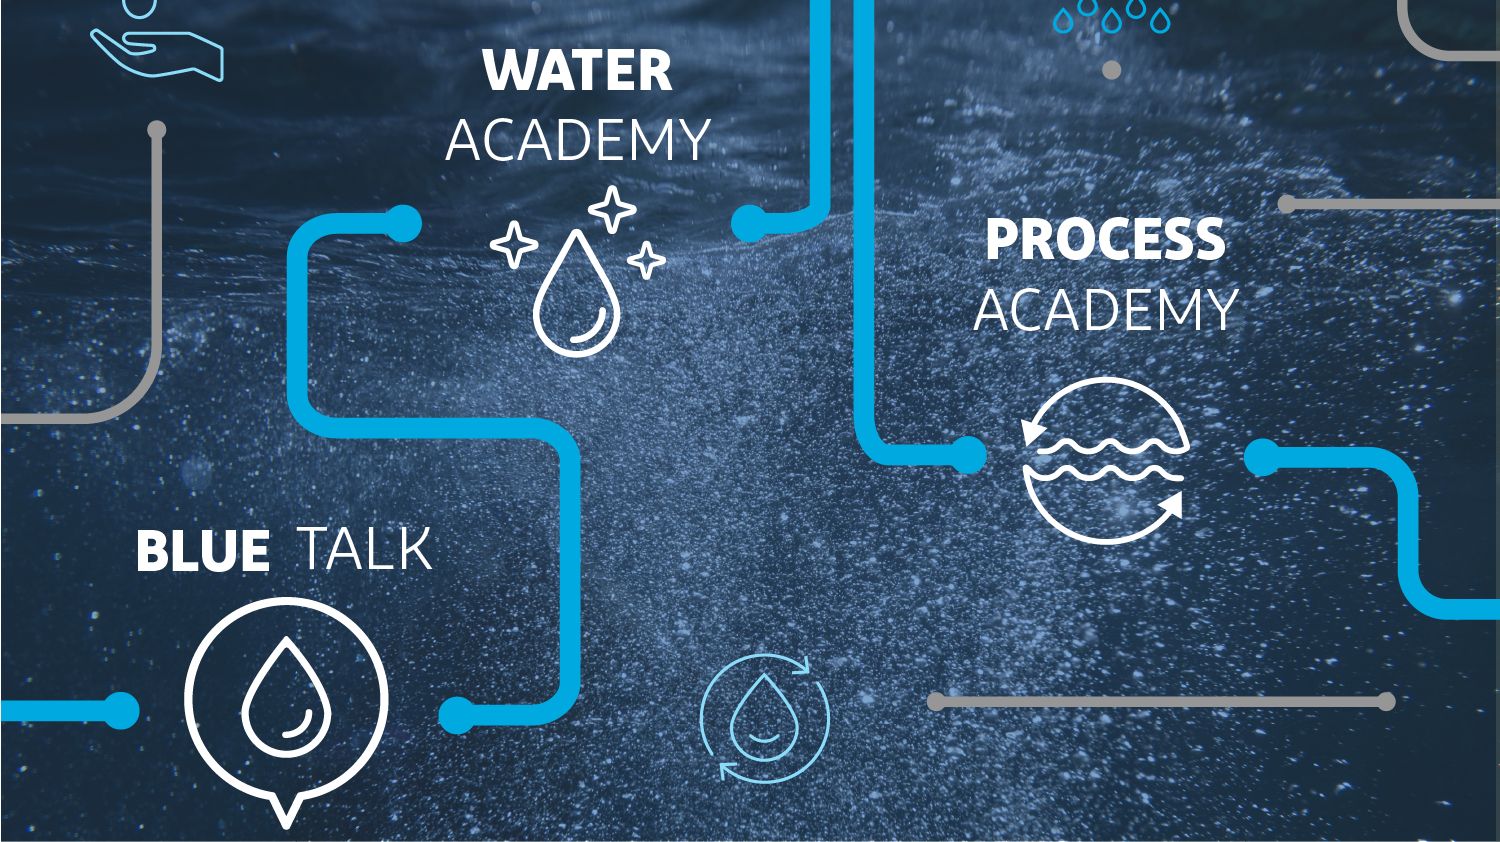 杜邦水解决方案水学院和过程学院的标志，后面有一个必威备用网址分子的插图